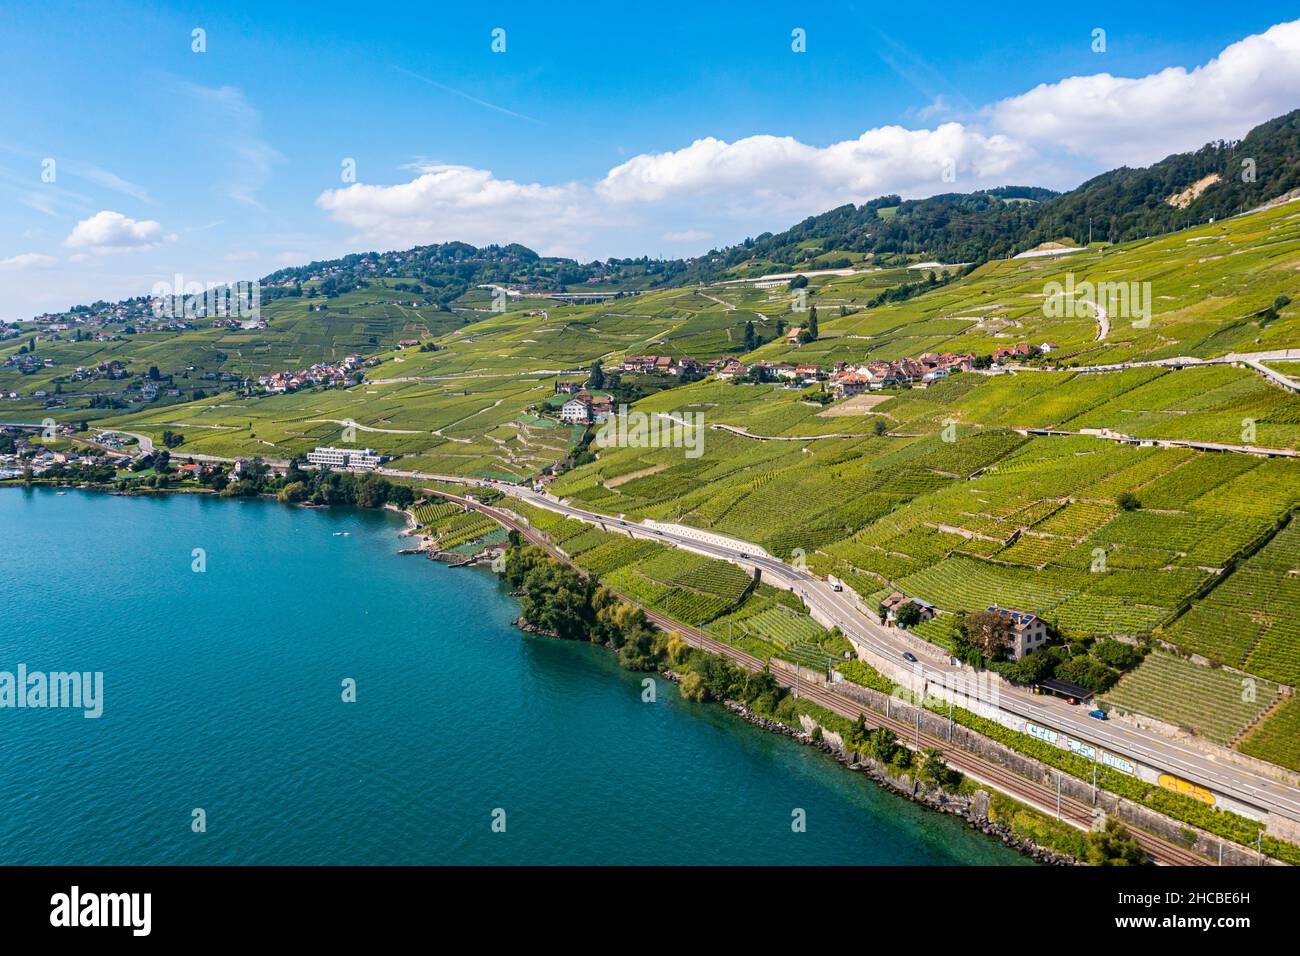 Suisse, canton de Vaud, vue aérienne des vignobles en terrasse de Lavaux en été Banque D'Images